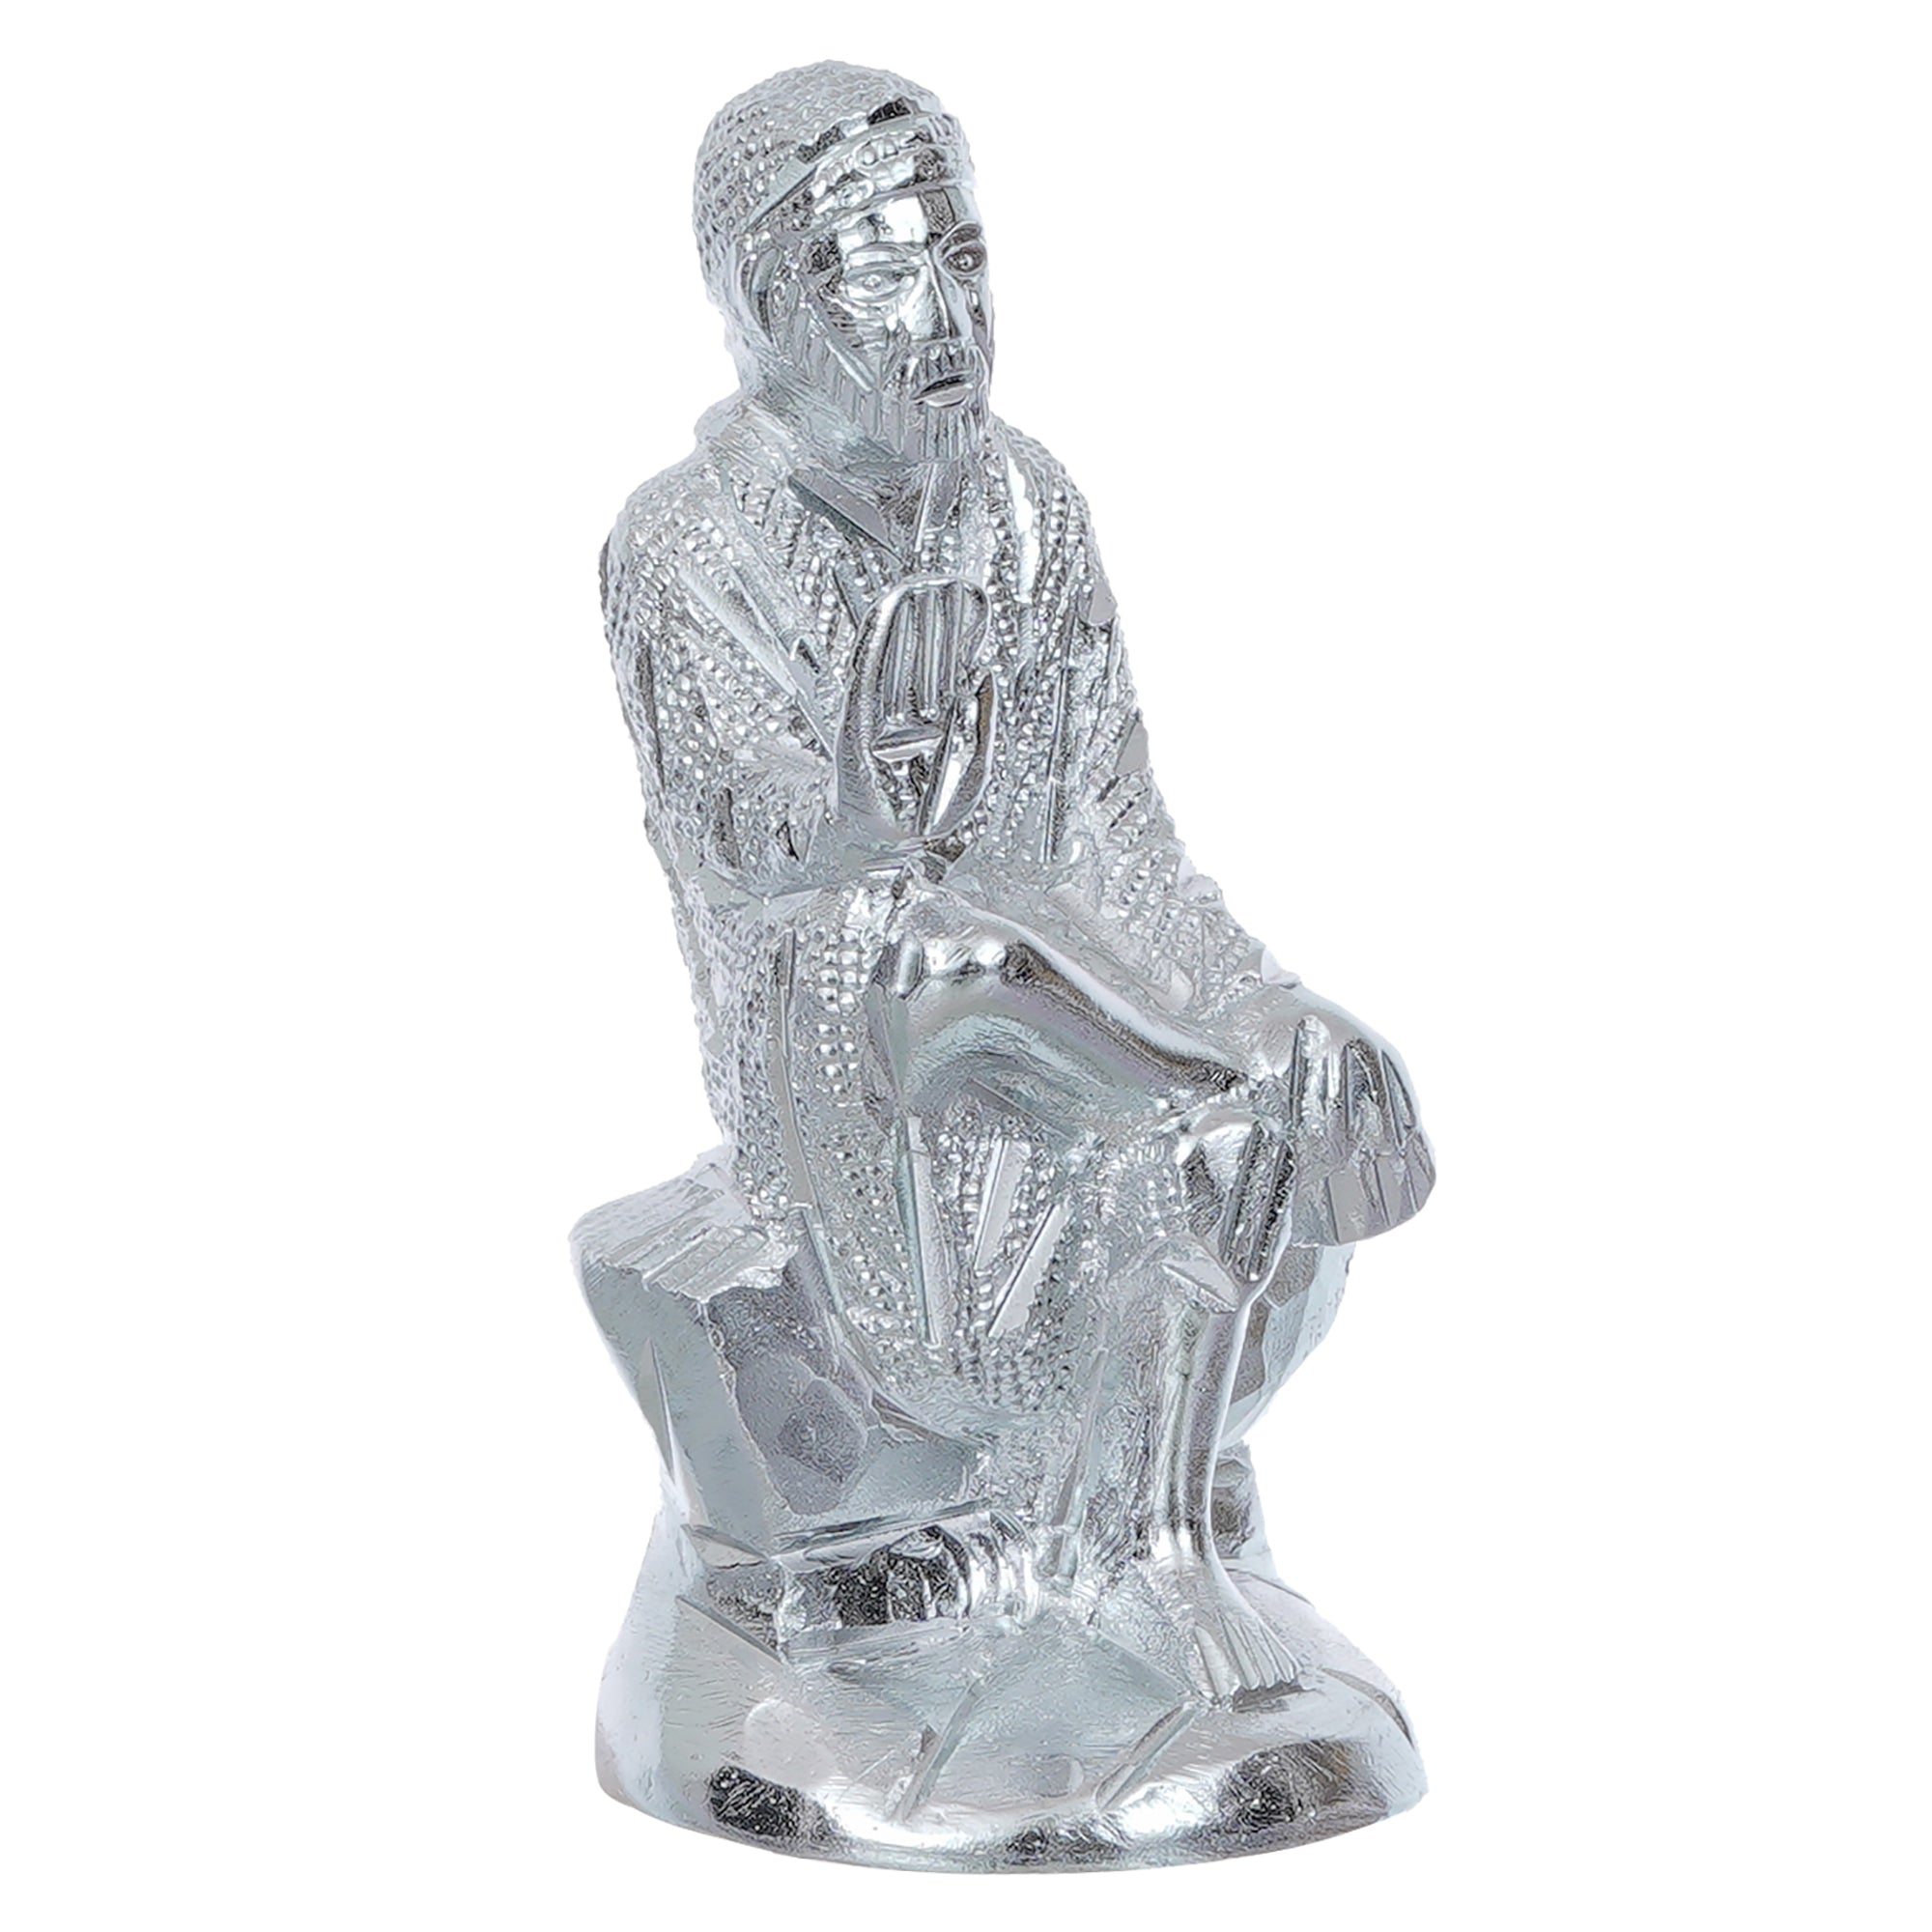 Silver Sai Baba Metal Figurine 2